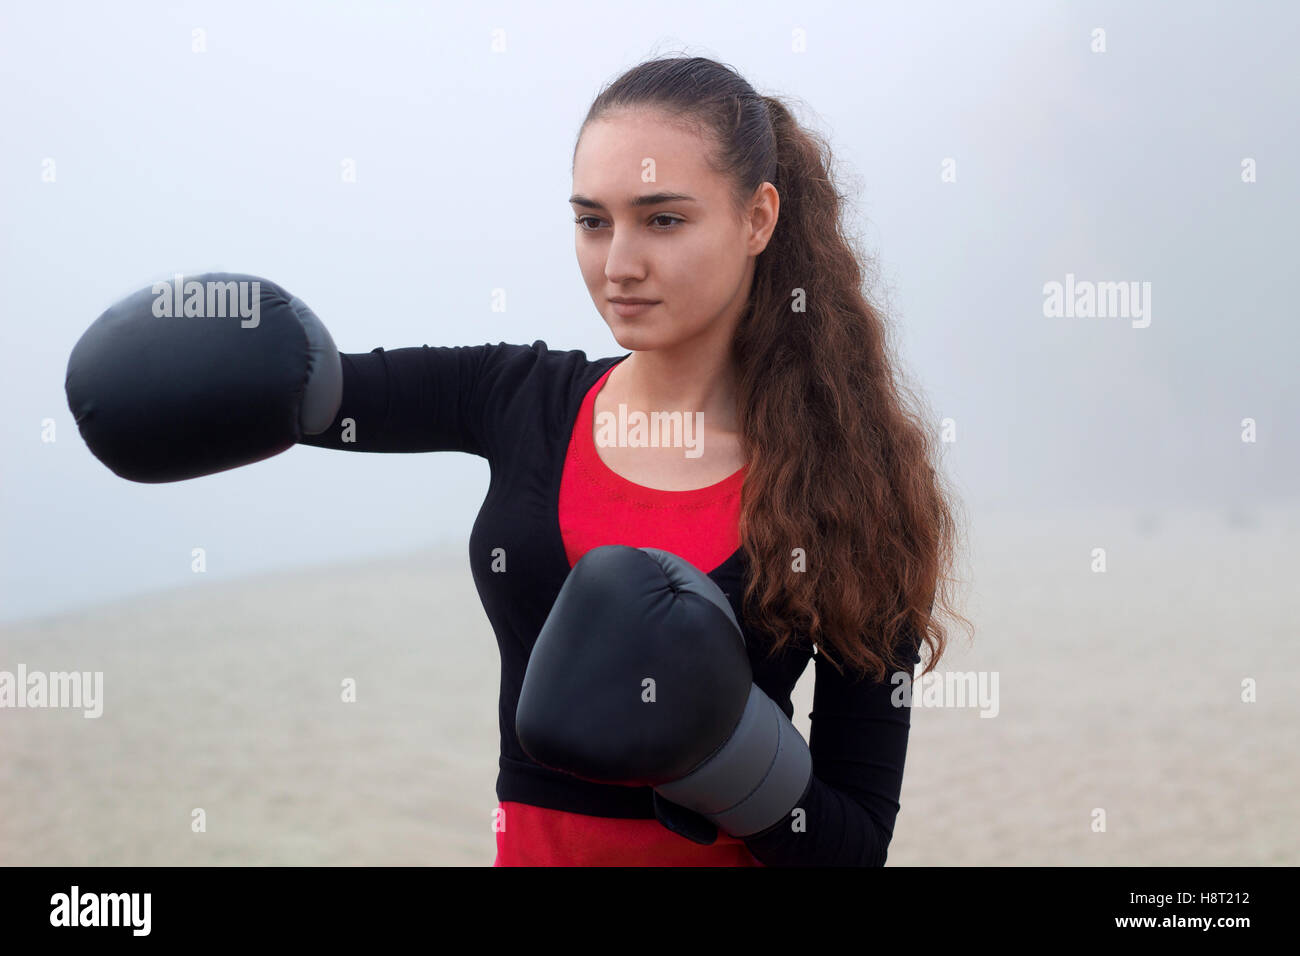 Los jóvenes bastante compacto deportivo de boxeo Fitness mujer hace ejercicios durante el entrenamiento Entrenamiento outdoor Foto de stock